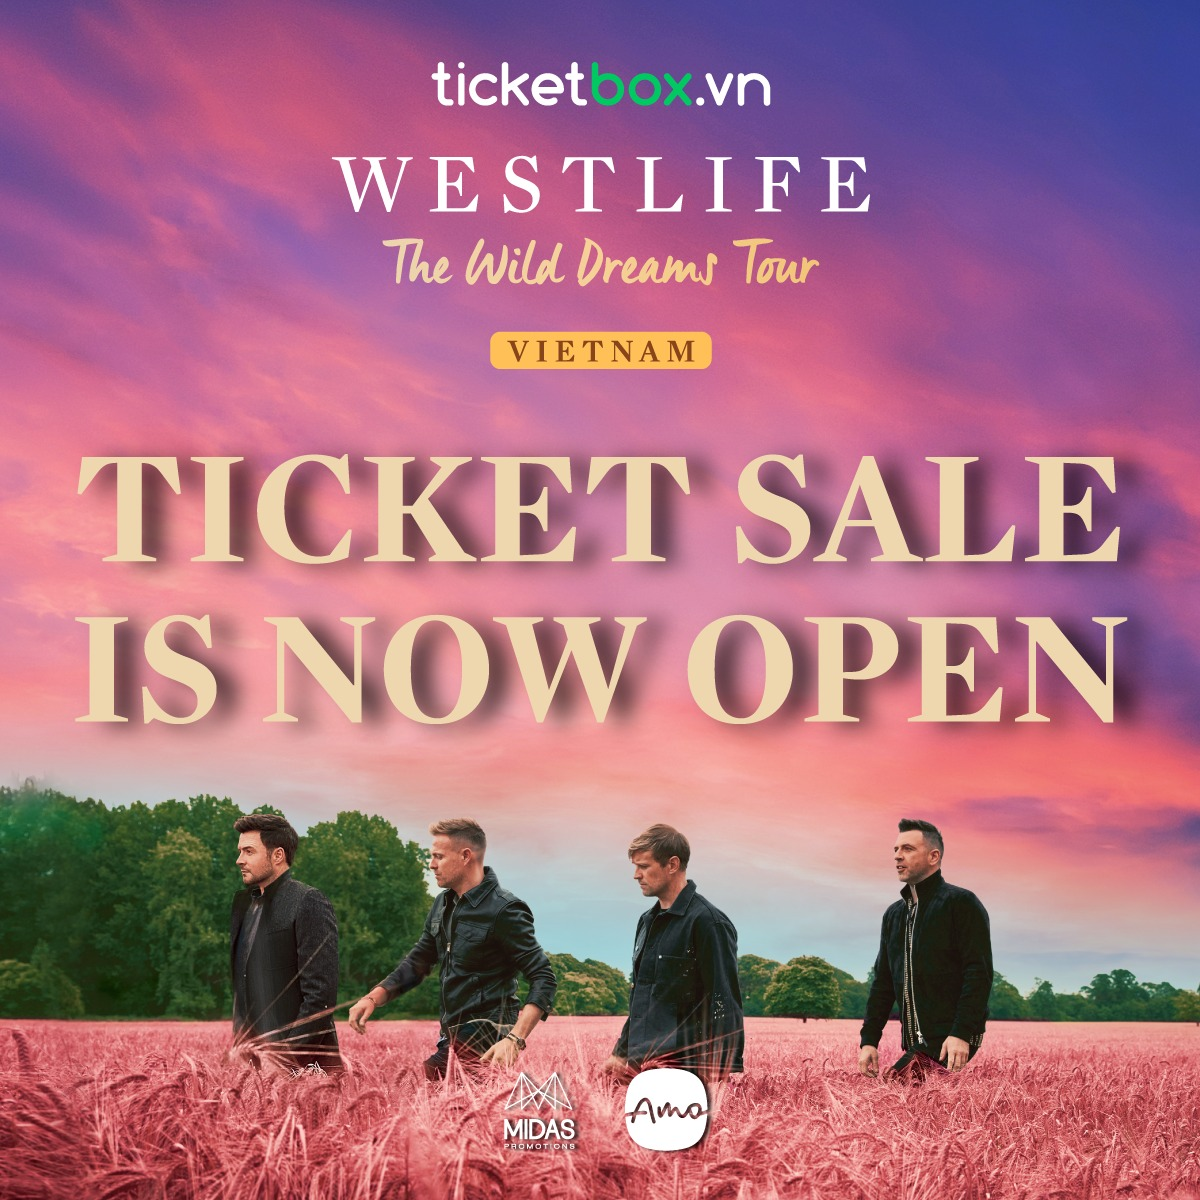 Mở bán vé concert Westlife tại Việt Nam: Web liên tục gặp lỗi nhưng vẫn sold-out toàn bộ khu vực khán đài - Ảnh 1.